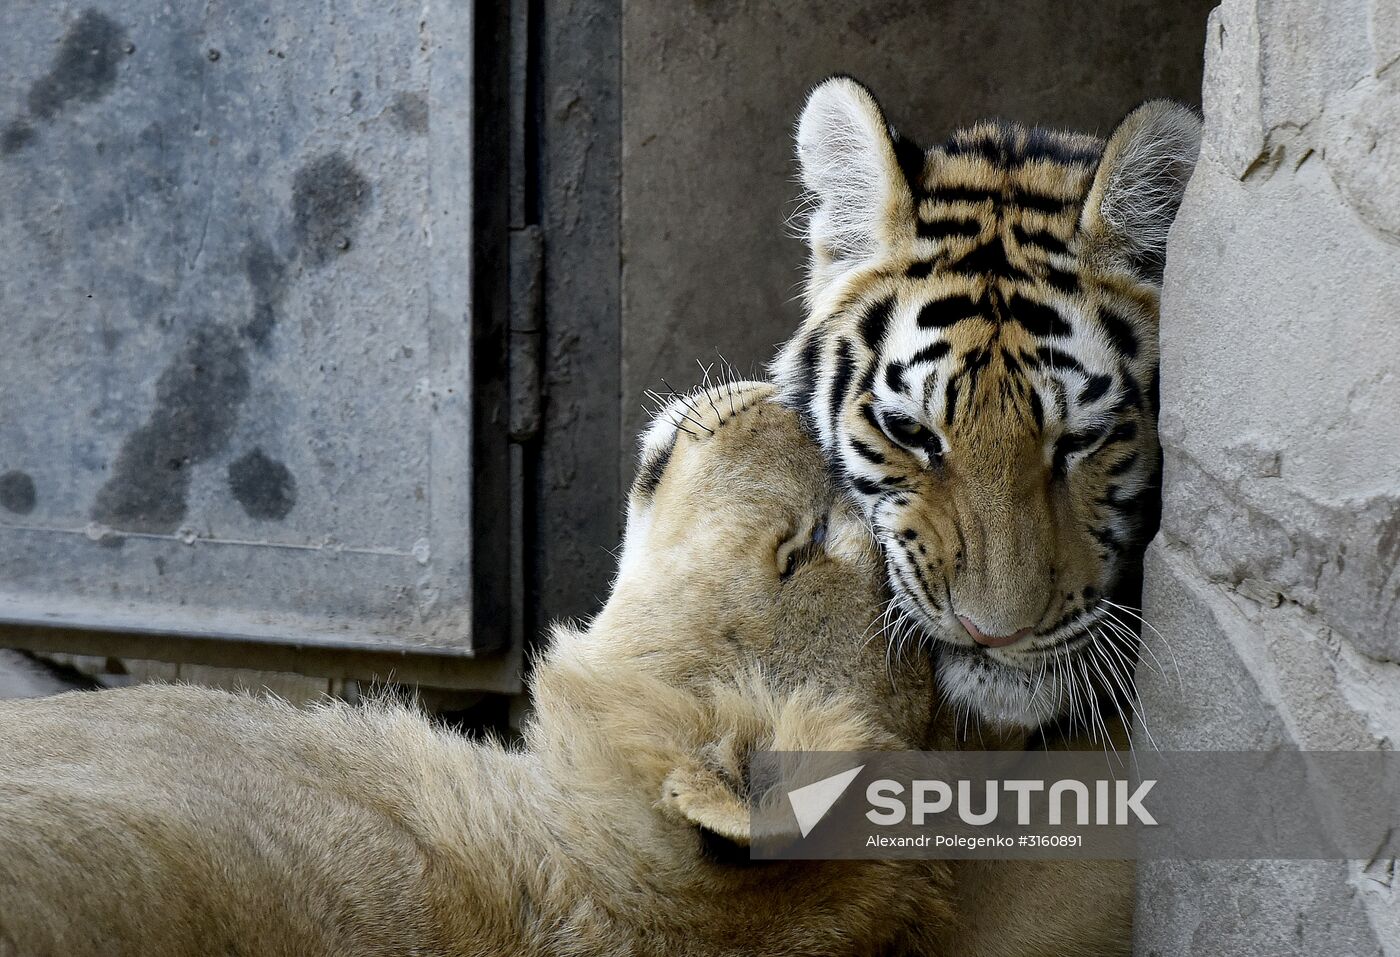 Amur tiger cubs at Taigan safari park in Crimea